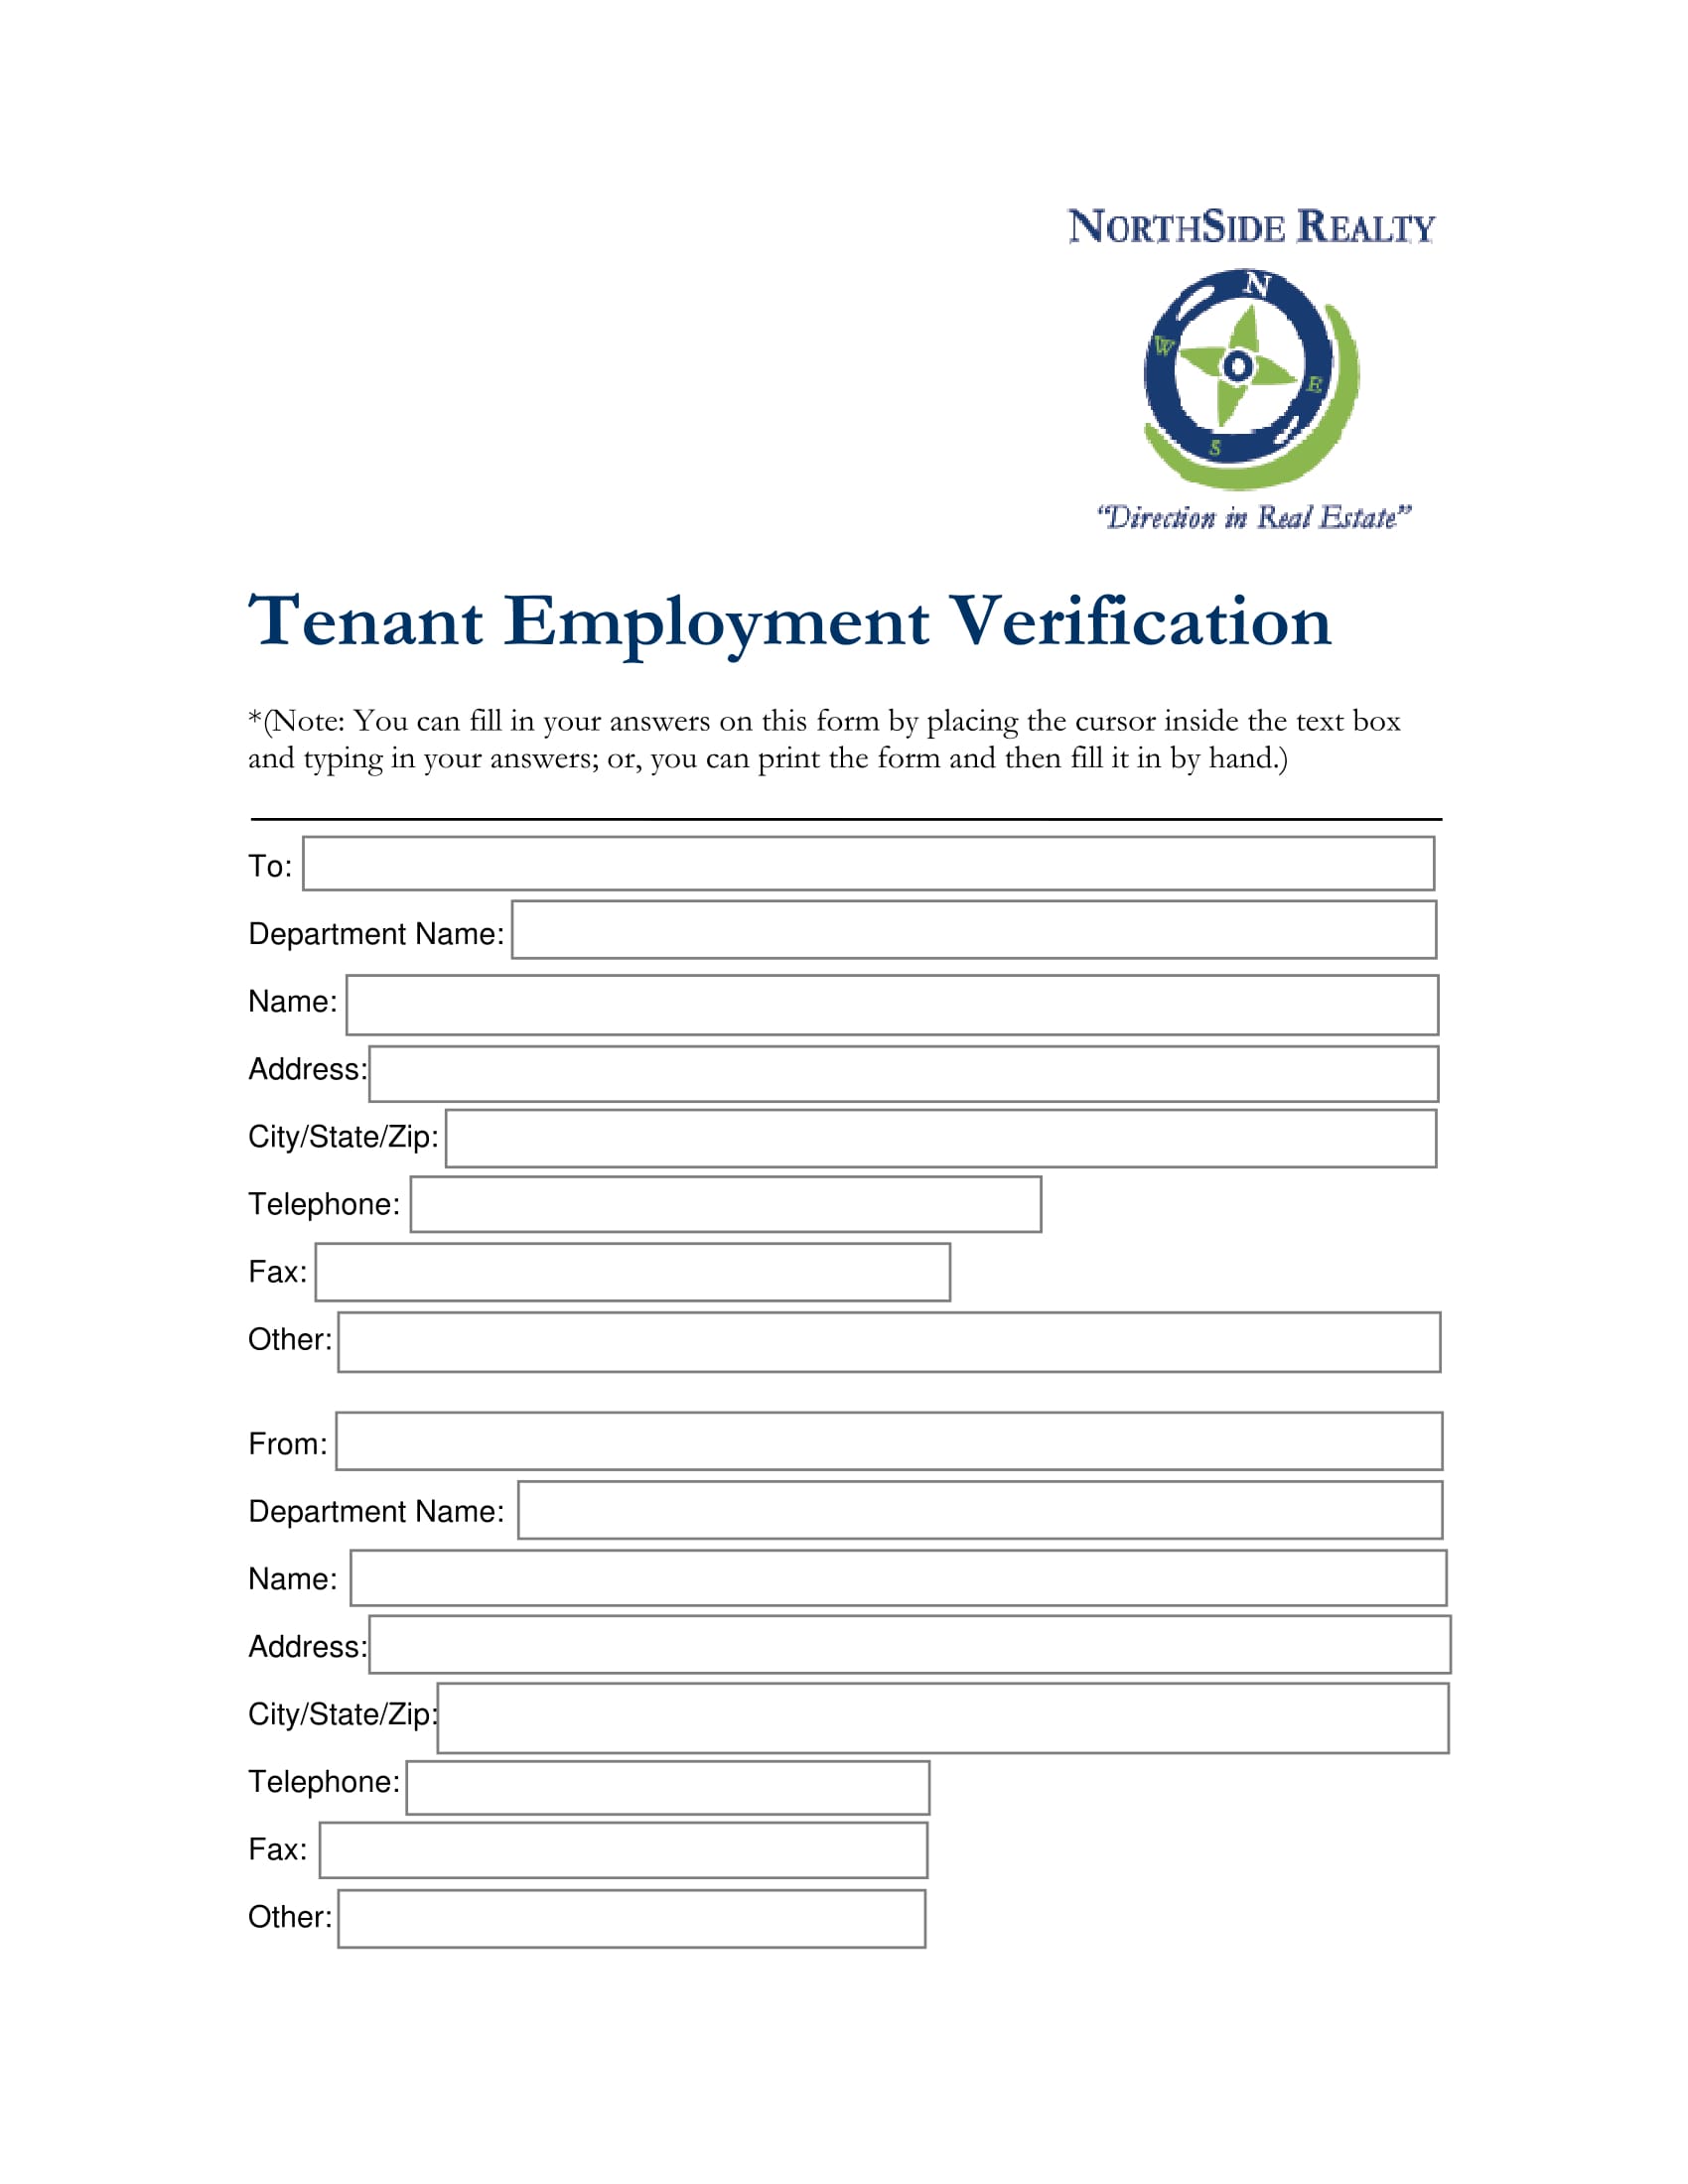 realty tenant employment verification 1